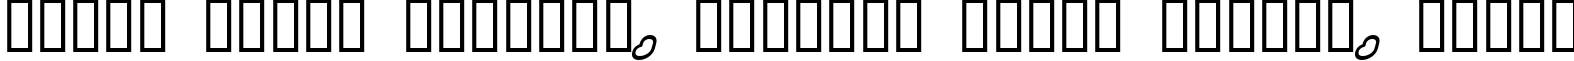 Пример написания шрифтом Legothick текста на белорусском